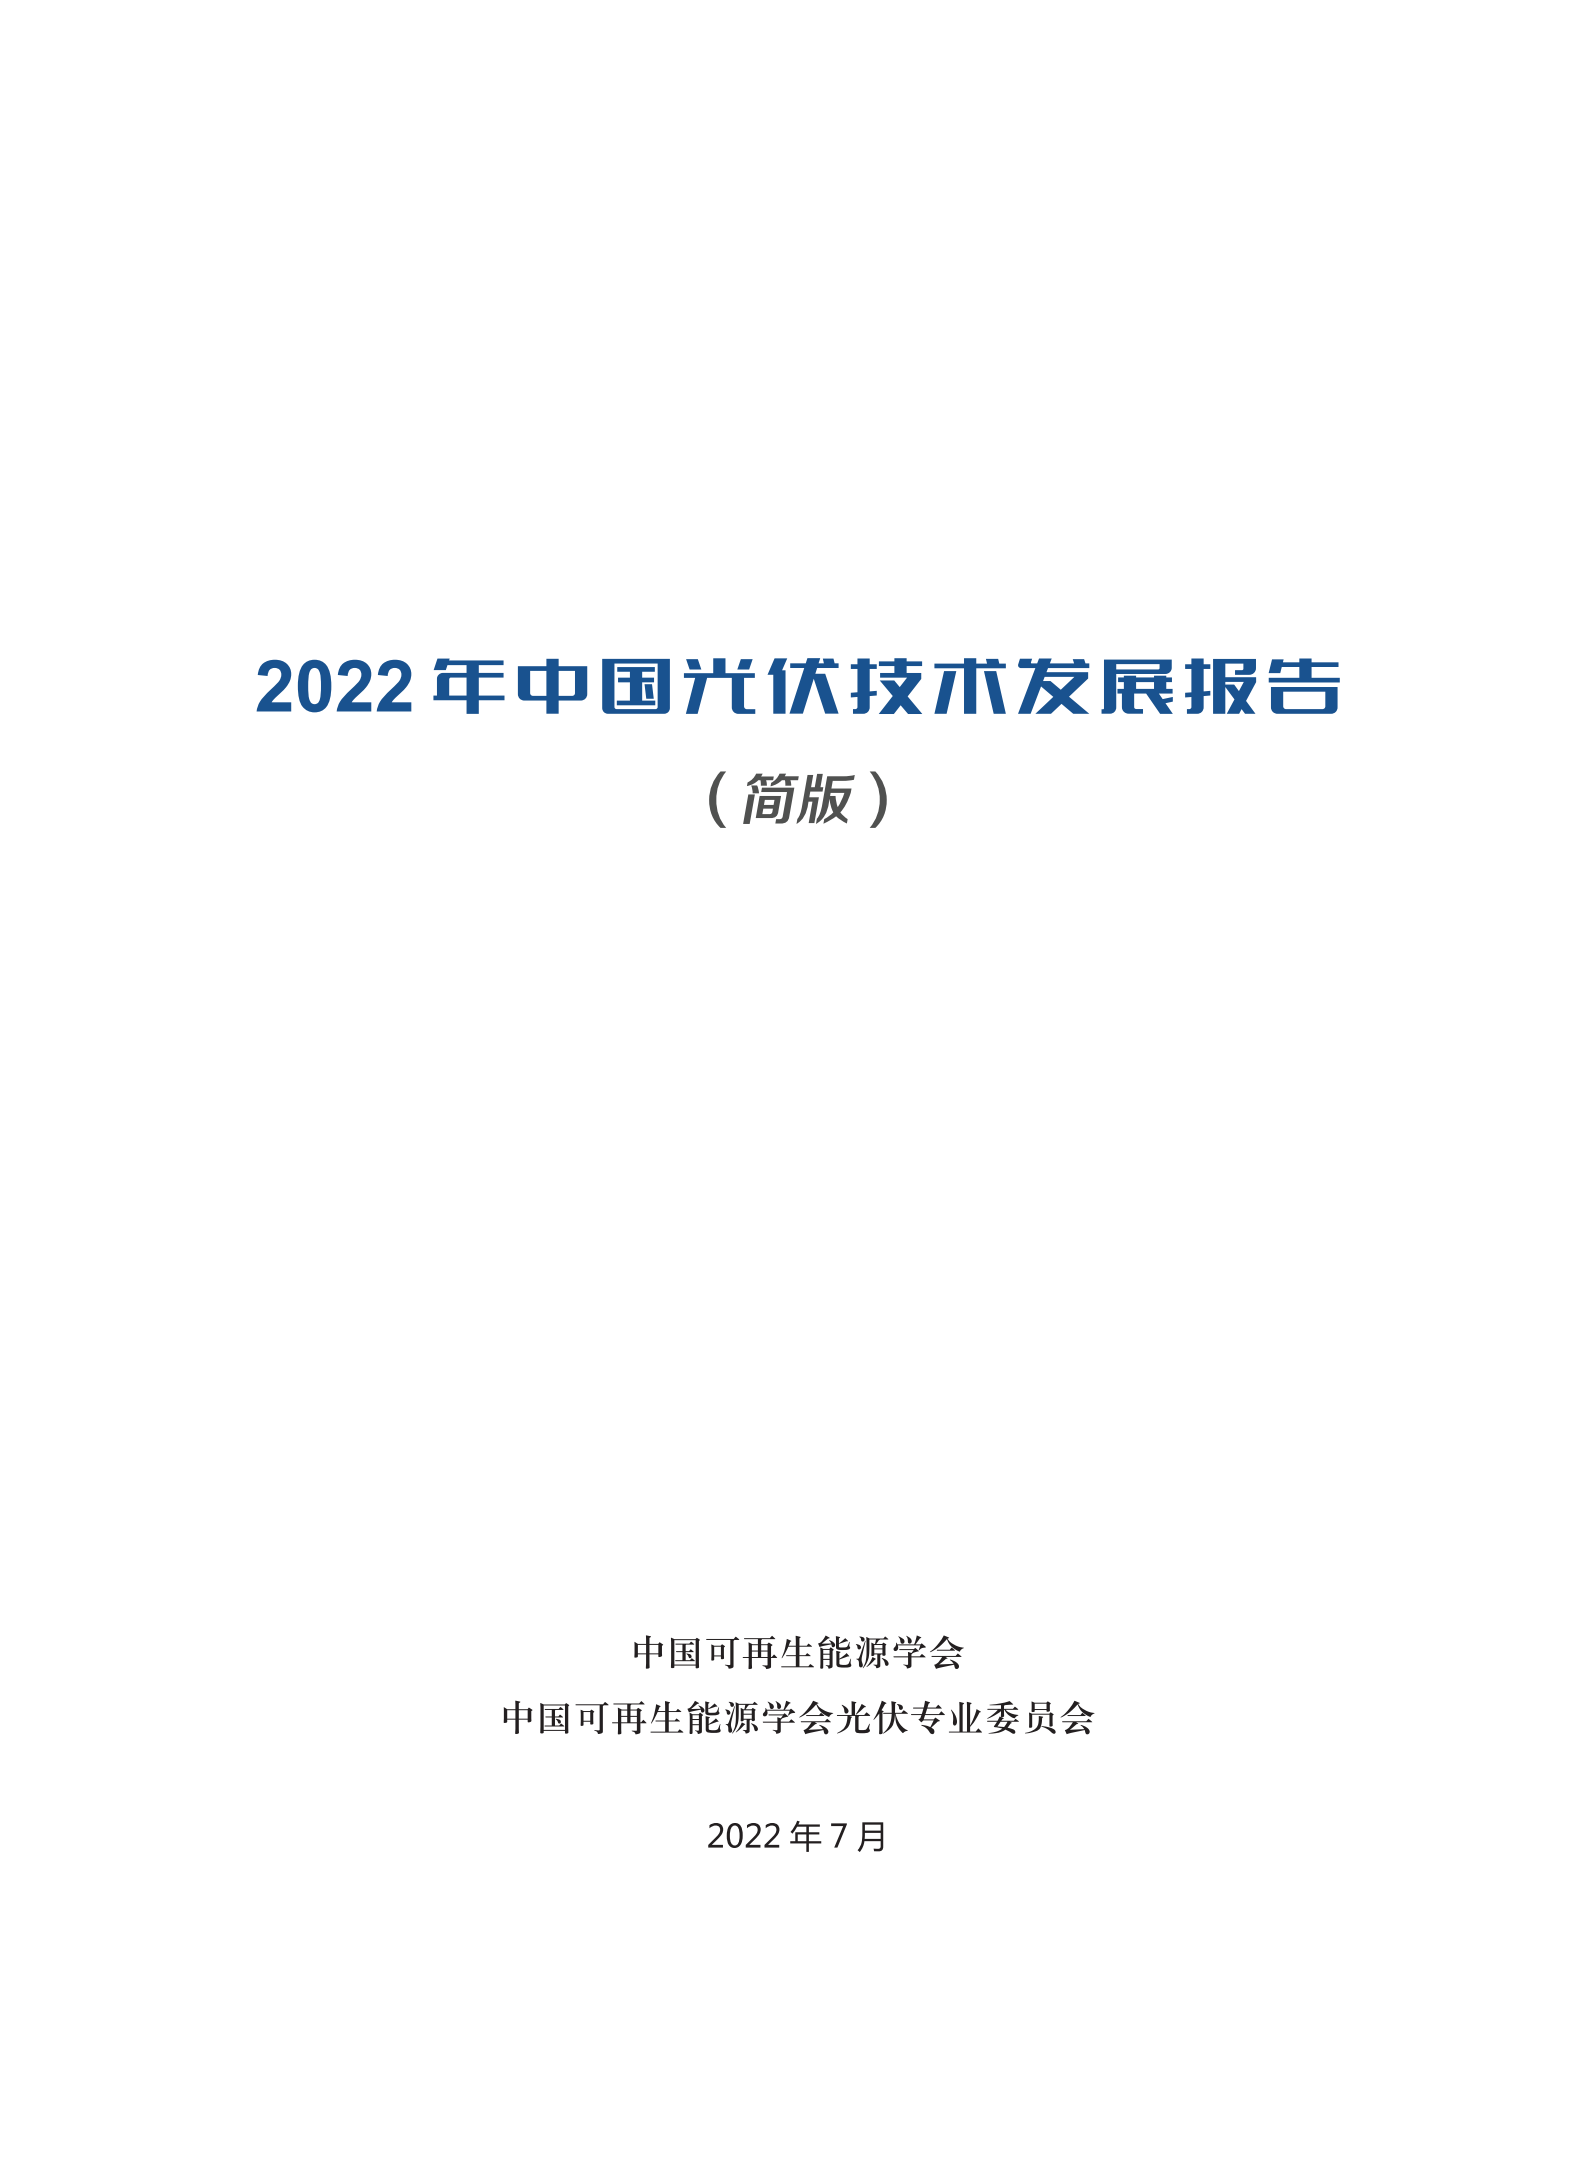 2022年中国光伏技术发展报告简版(1)_01.png